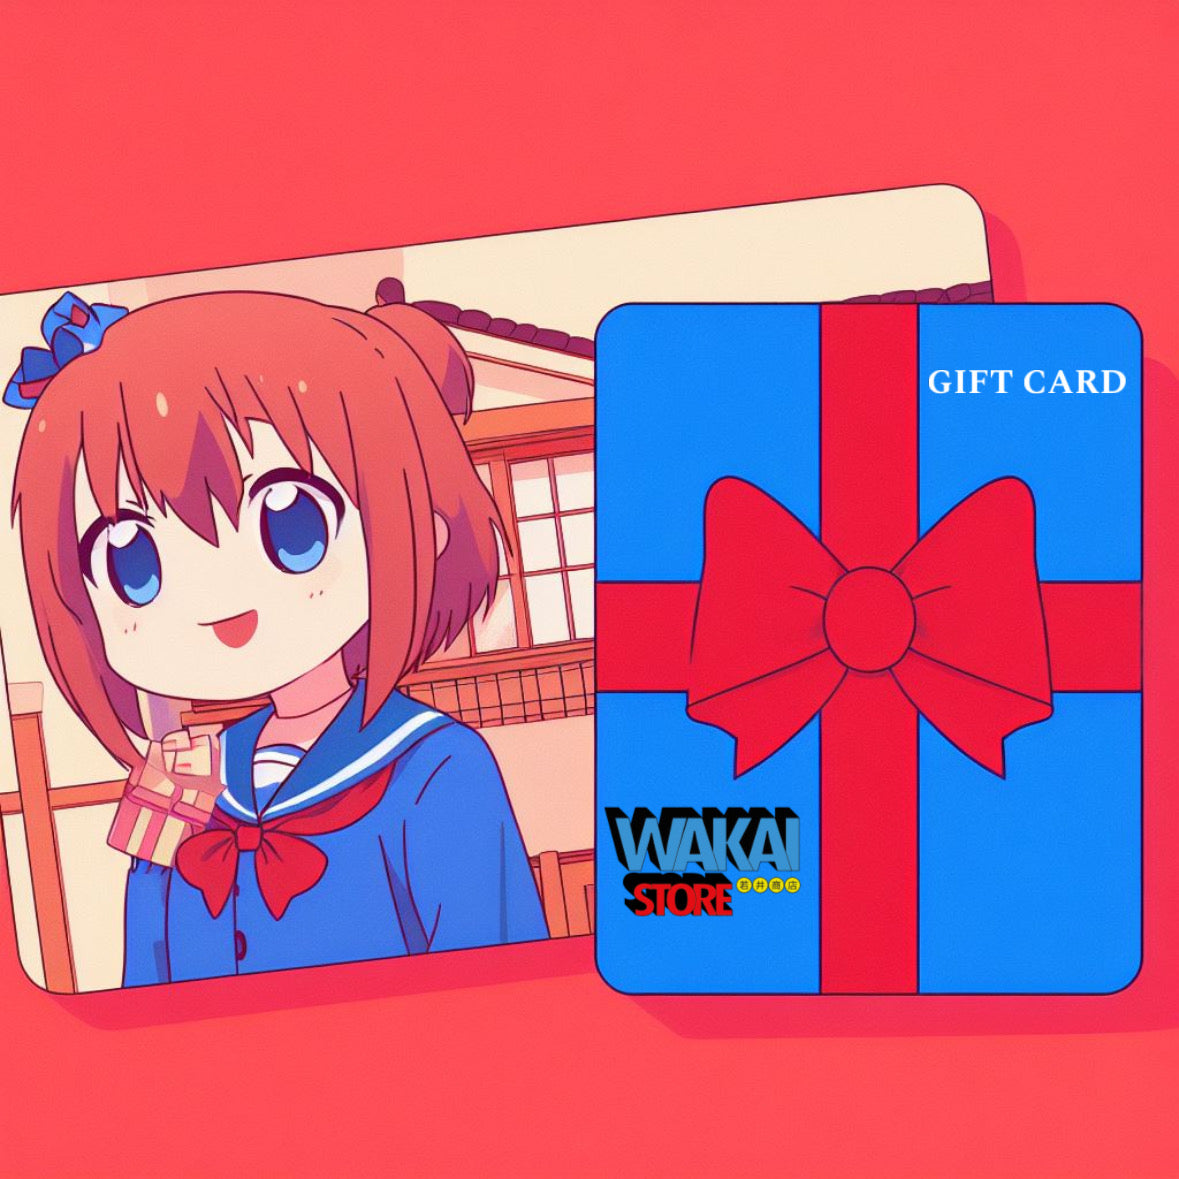 Gift Card Wakai Store